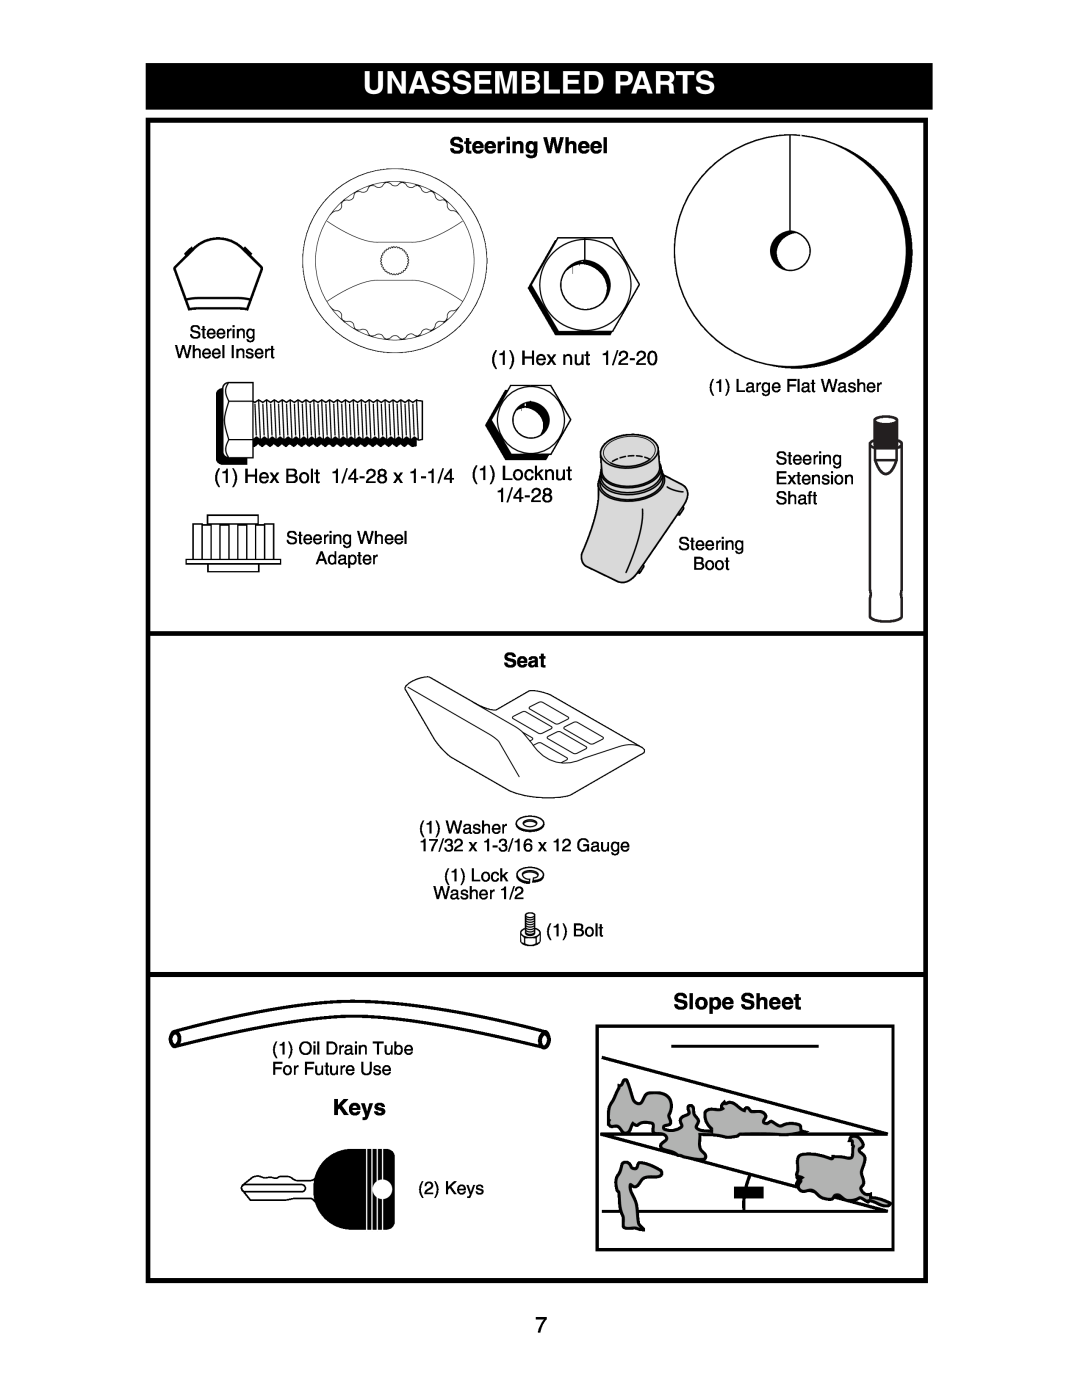 Poulan 191603 manual Unassembled Parts, Steering Wheel, Slope Sheet, Keys, Seat 